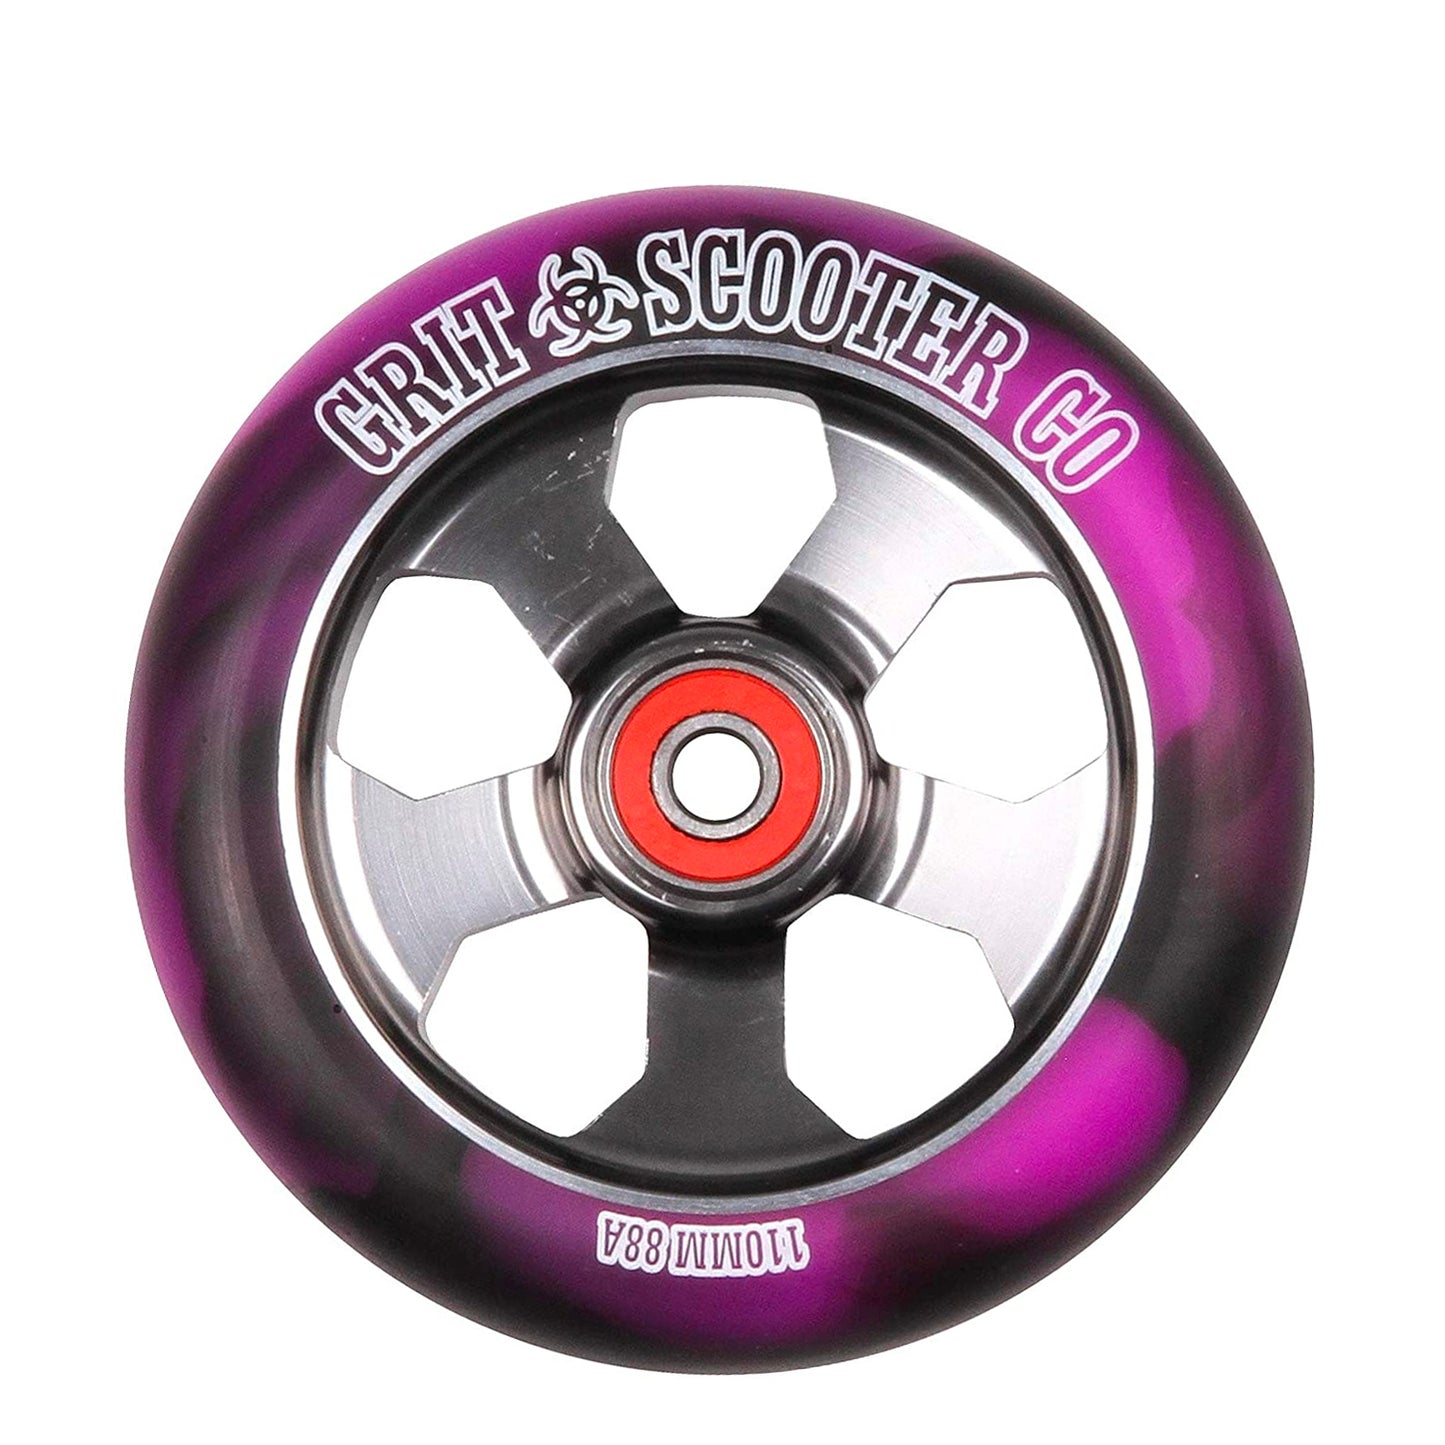 Grit 5 Spoke 110mm Scooter Wheel - Black Purple / Titanium (x 2 Sold as a pair) - Prime Delux Store